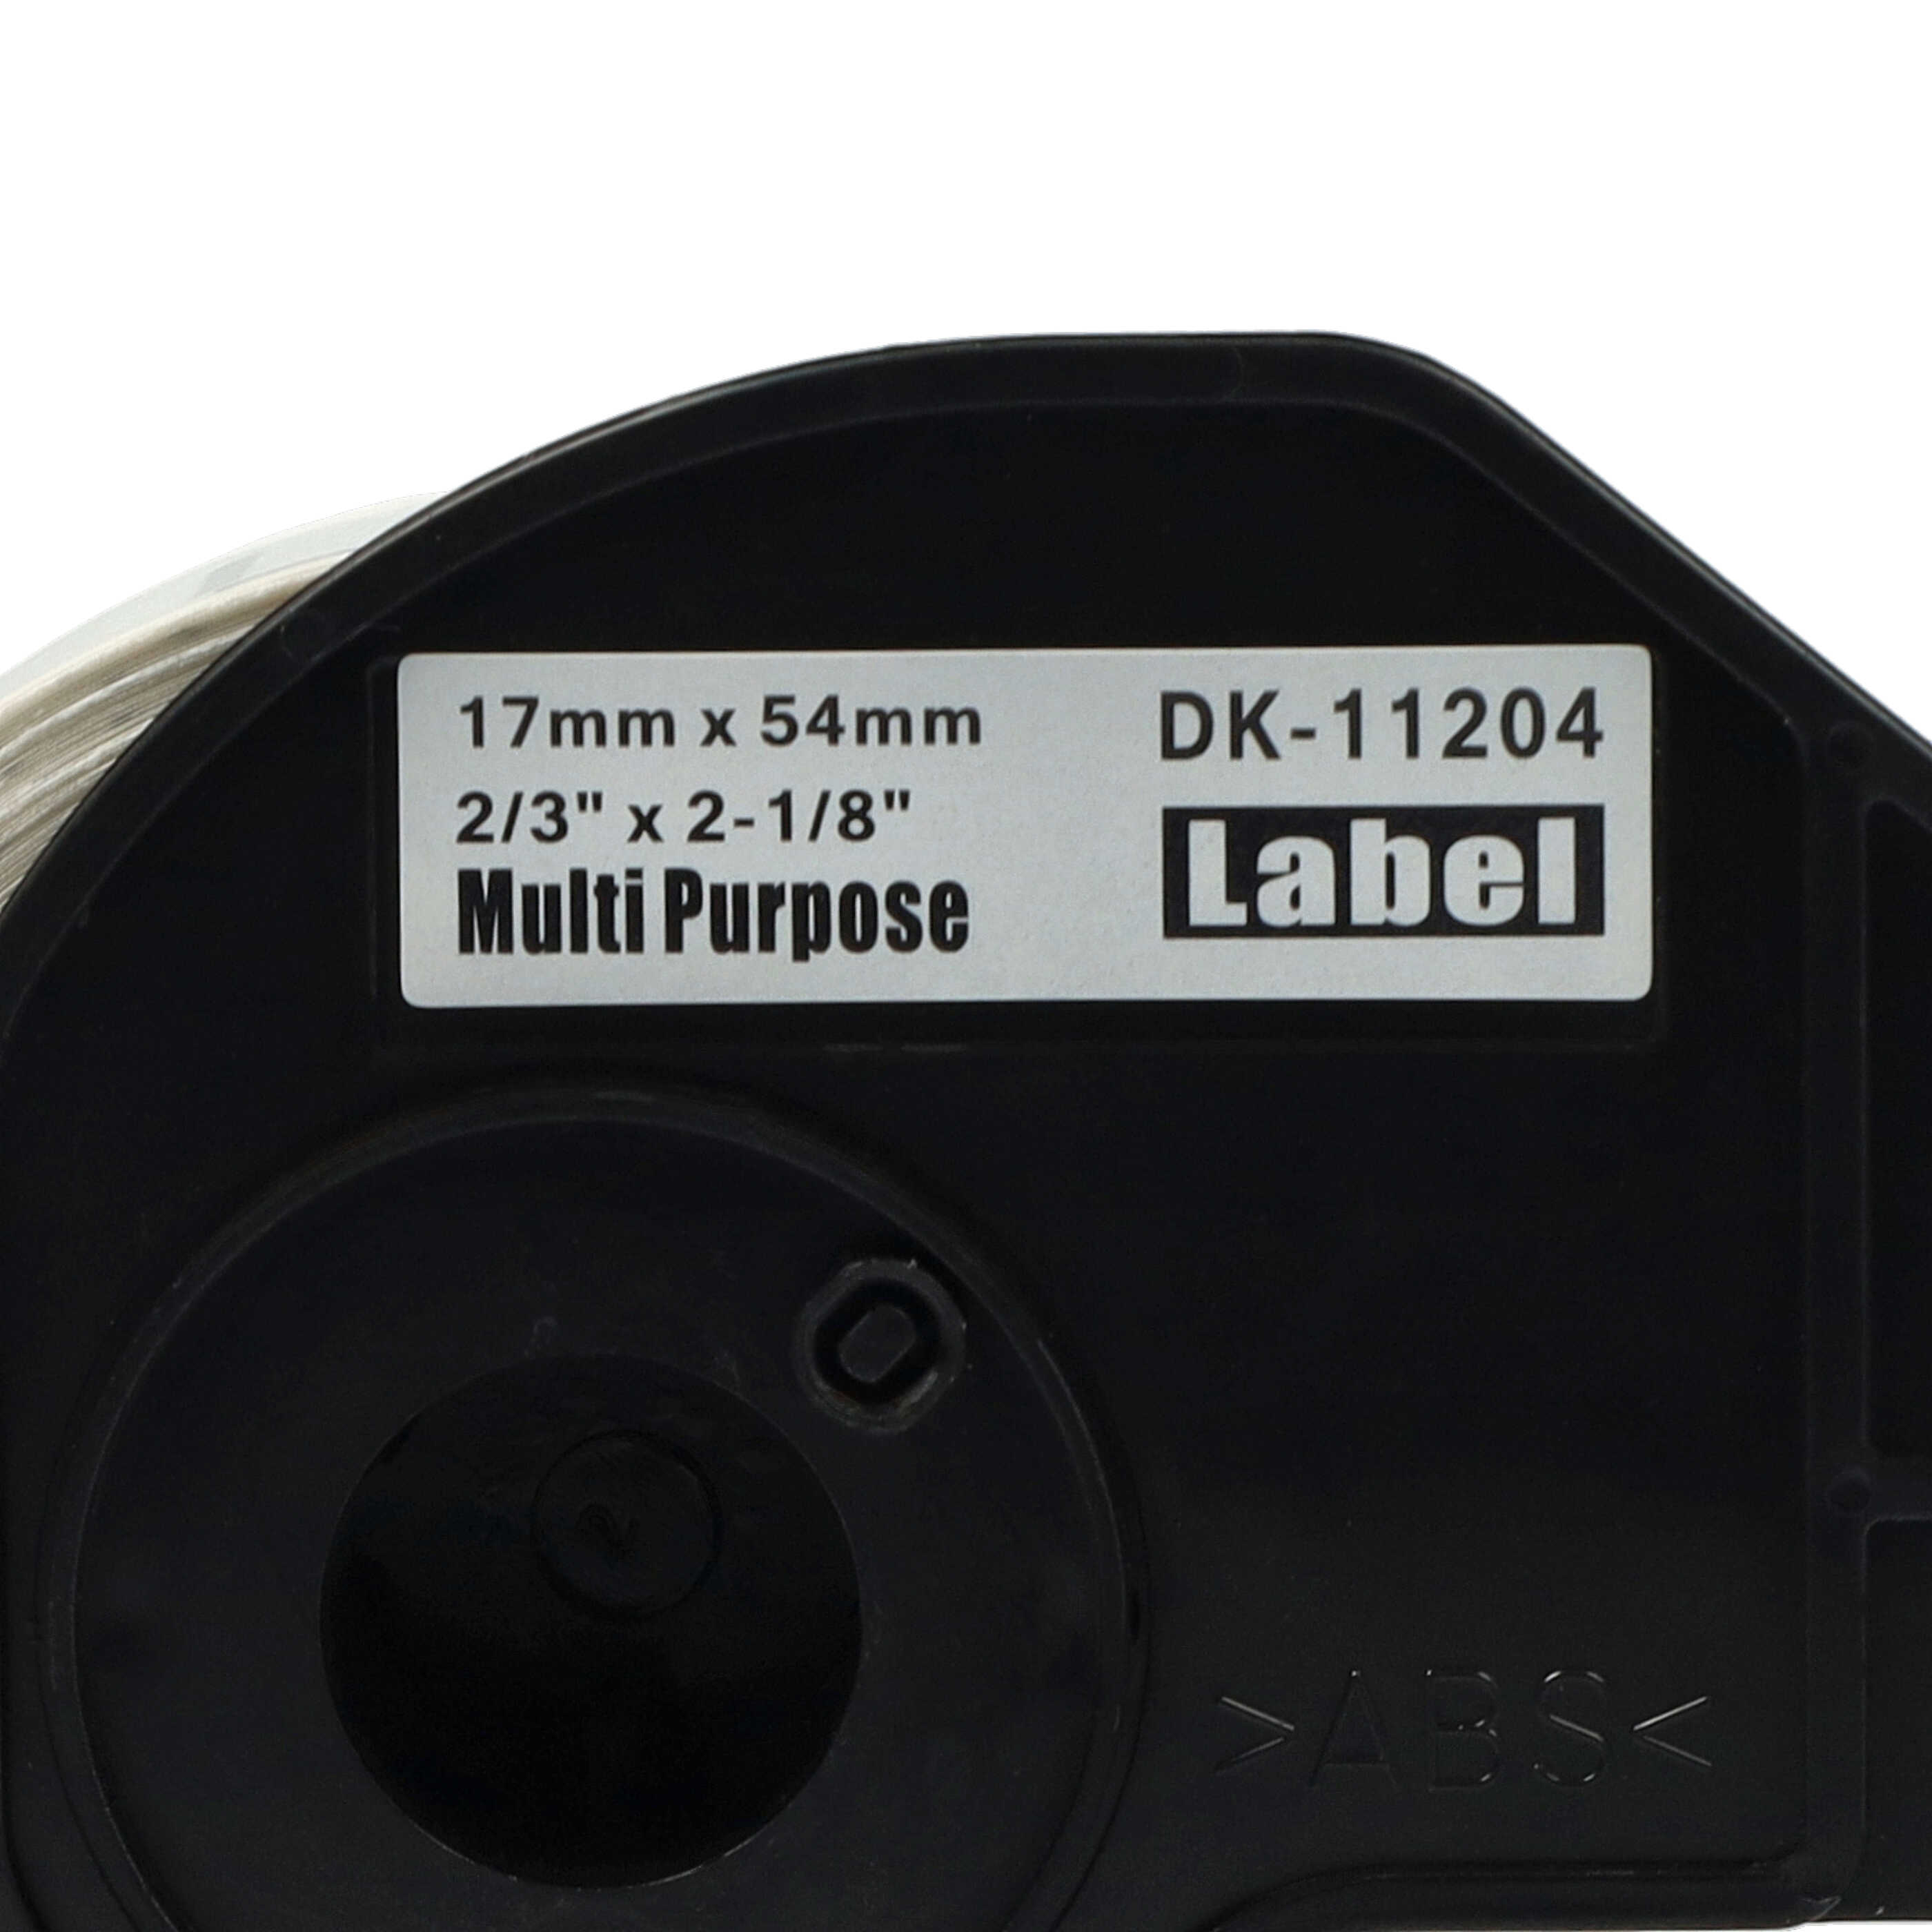 10x Rotolo etichette sostituisce Brother DK-11204 per etichettatrice - 17mm x 54mm + supporto